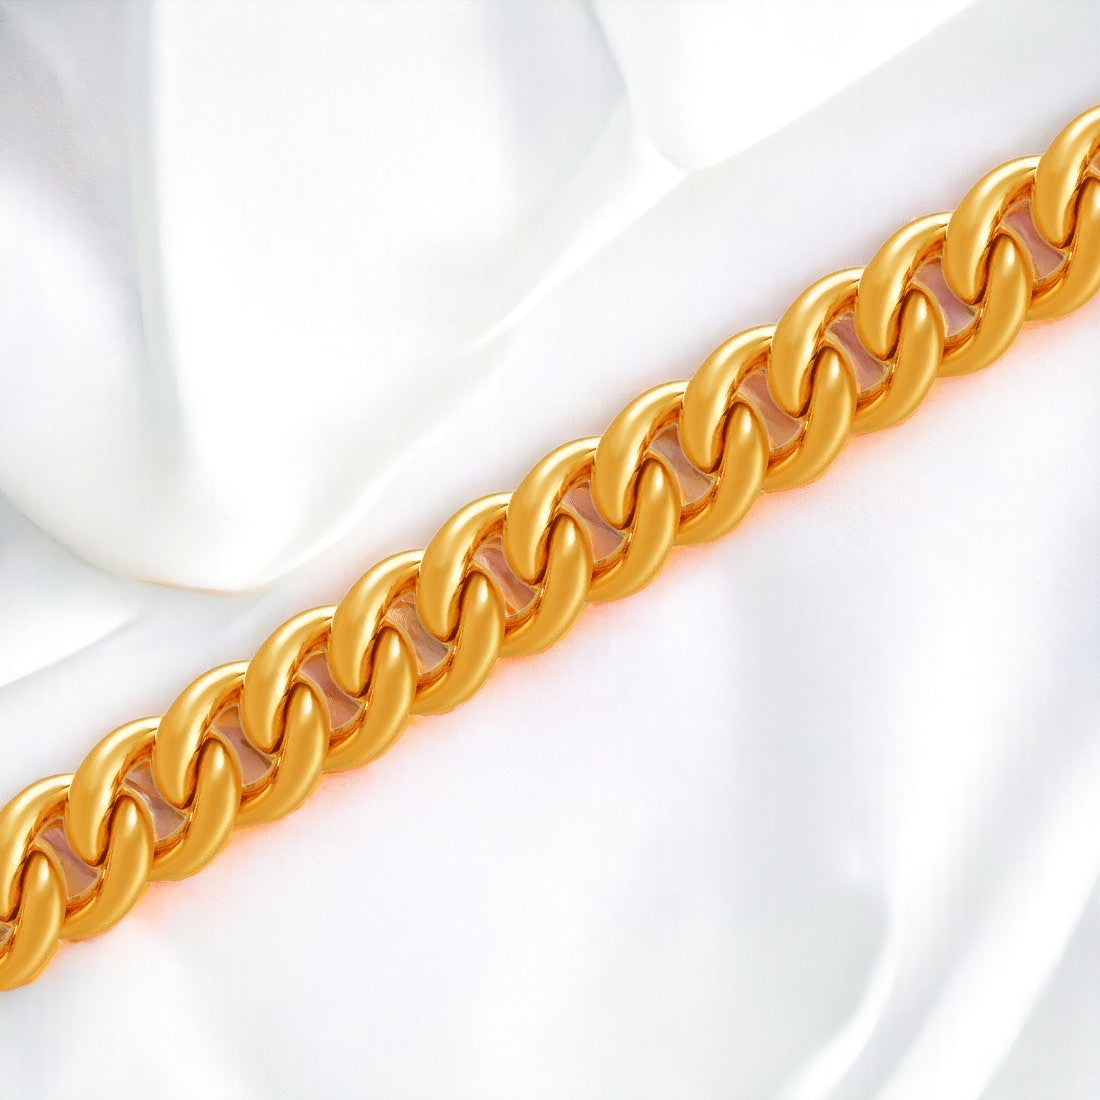 Link Chain Bracelet For Men & Boys